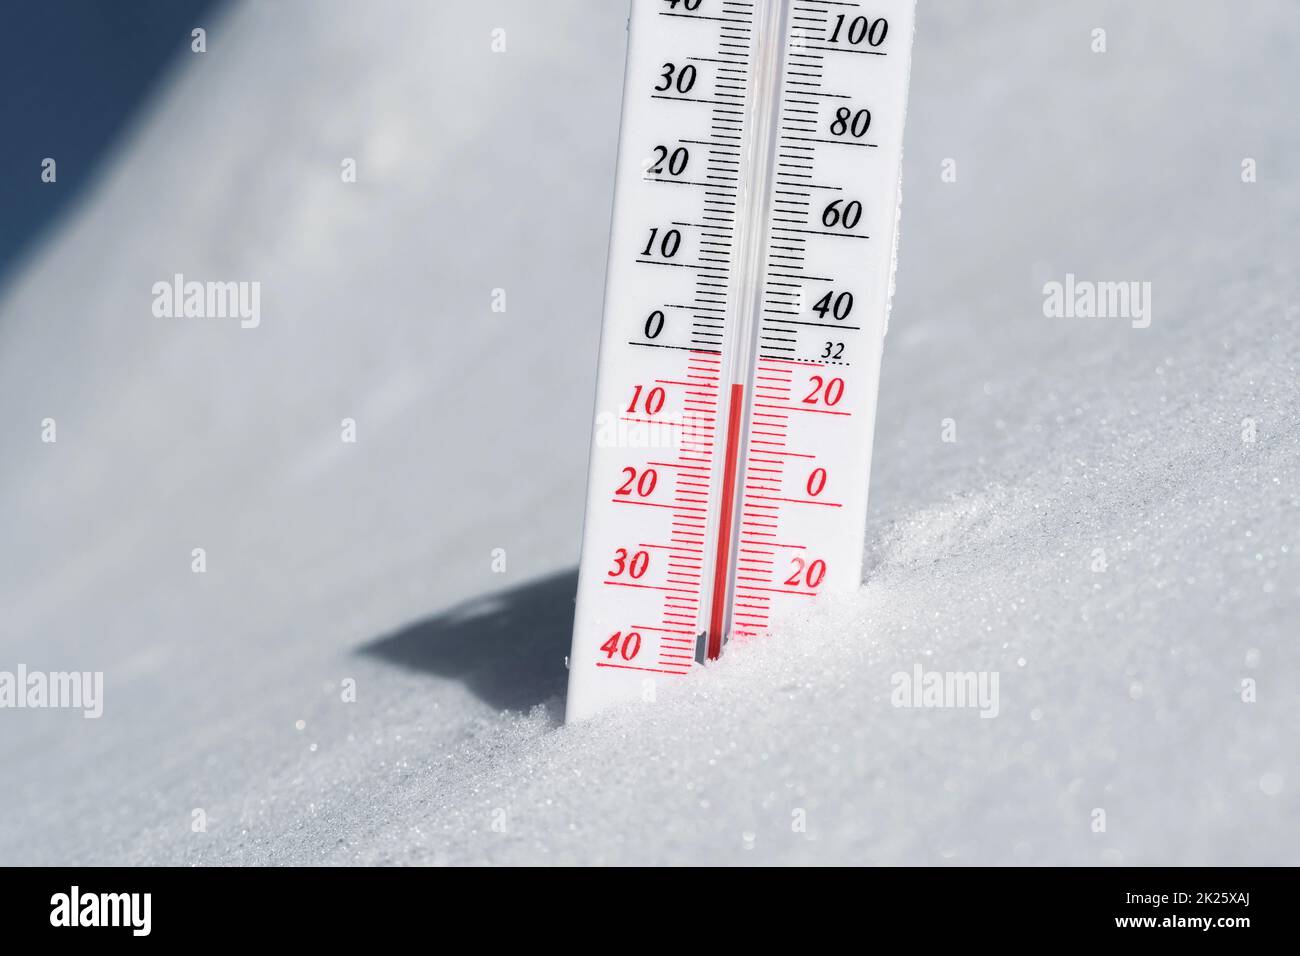 Das Thermometer liegt auf dem Schnee und zeigt eine negative Temperatur bei kaltem Wetter am blauen Himmel an.Meteorologische Bedingungen mit niedrigen Luft- und Umgebungstemperaturen.Klimawandel und globale Erwärmung Stockfoto